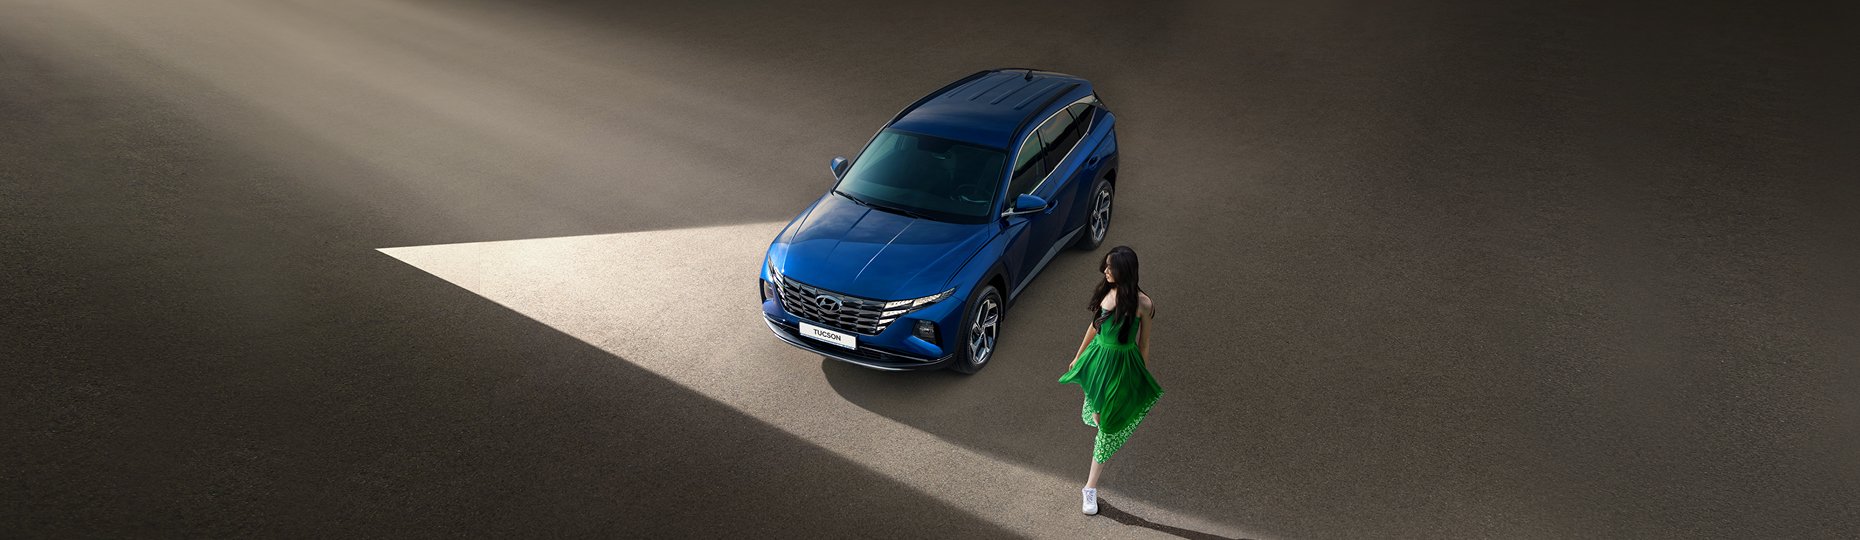 Производительность нового Hyundai Tucson | Официальный дилер в Алматы